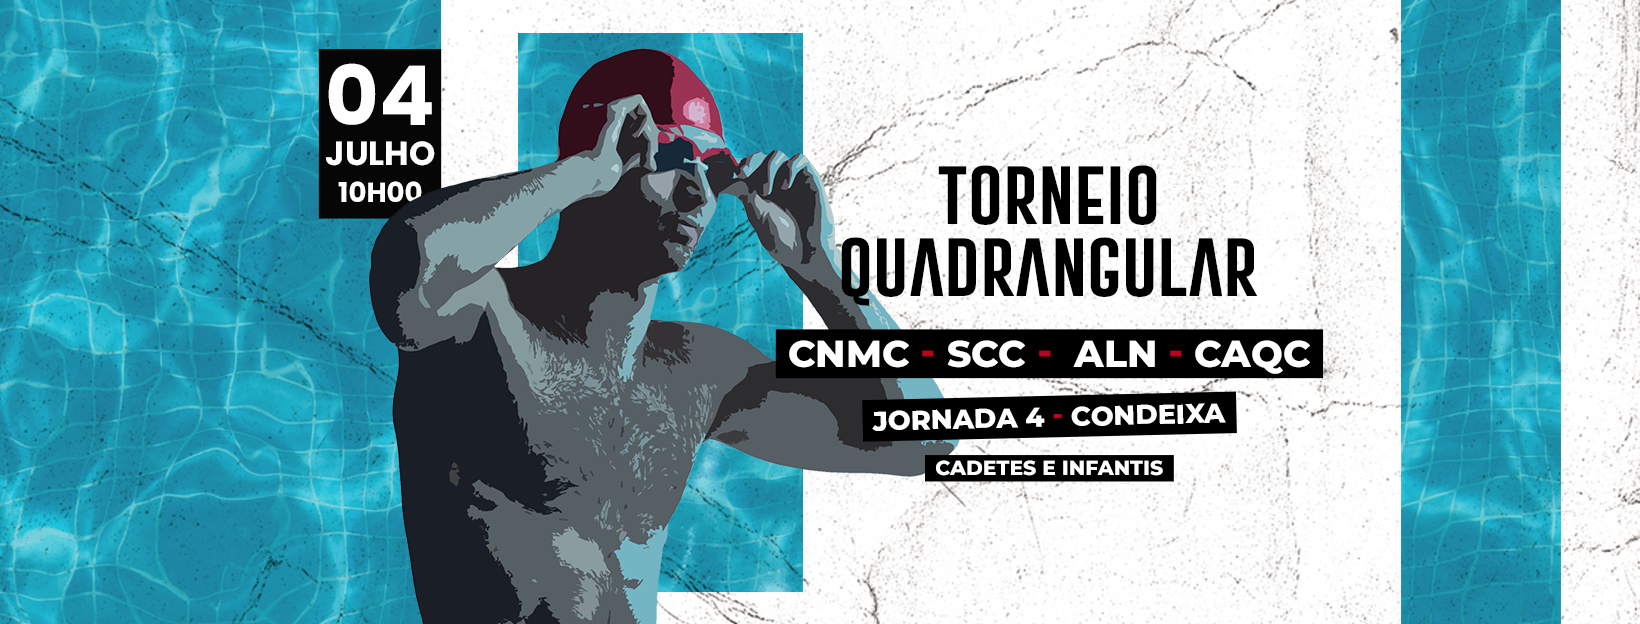 Quadrangular CNMC-SCC-ALN-CAQC, jornada 4 @ Condeixa